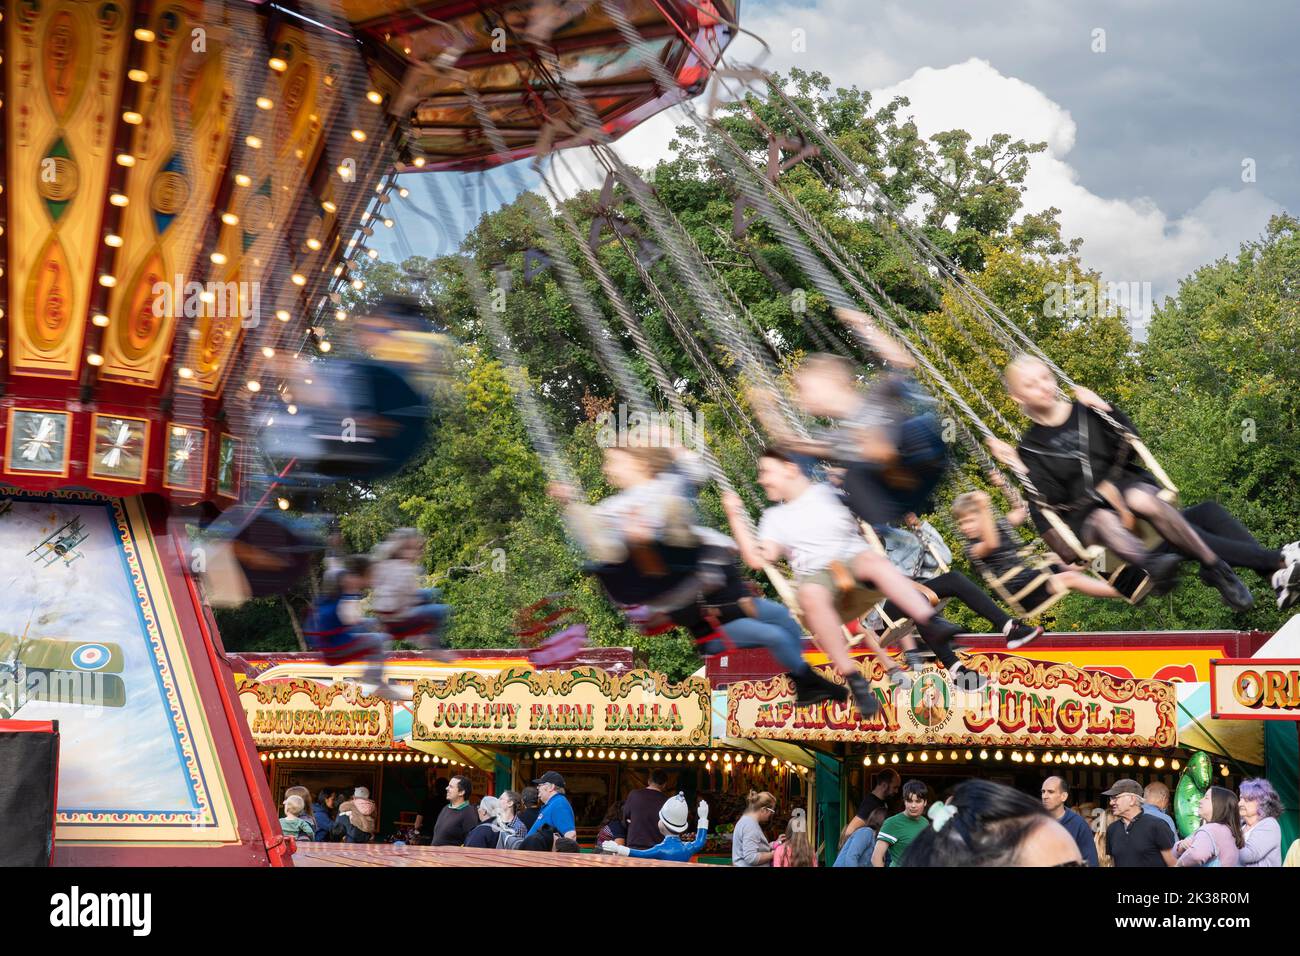 Auf der traditionellen Chair-O-Plane-Vergnügungsfahrt im Carters Vintage Steam Funfair, Basingstoke war Memorial Park, England, schweben Menschen herum Stockfoto